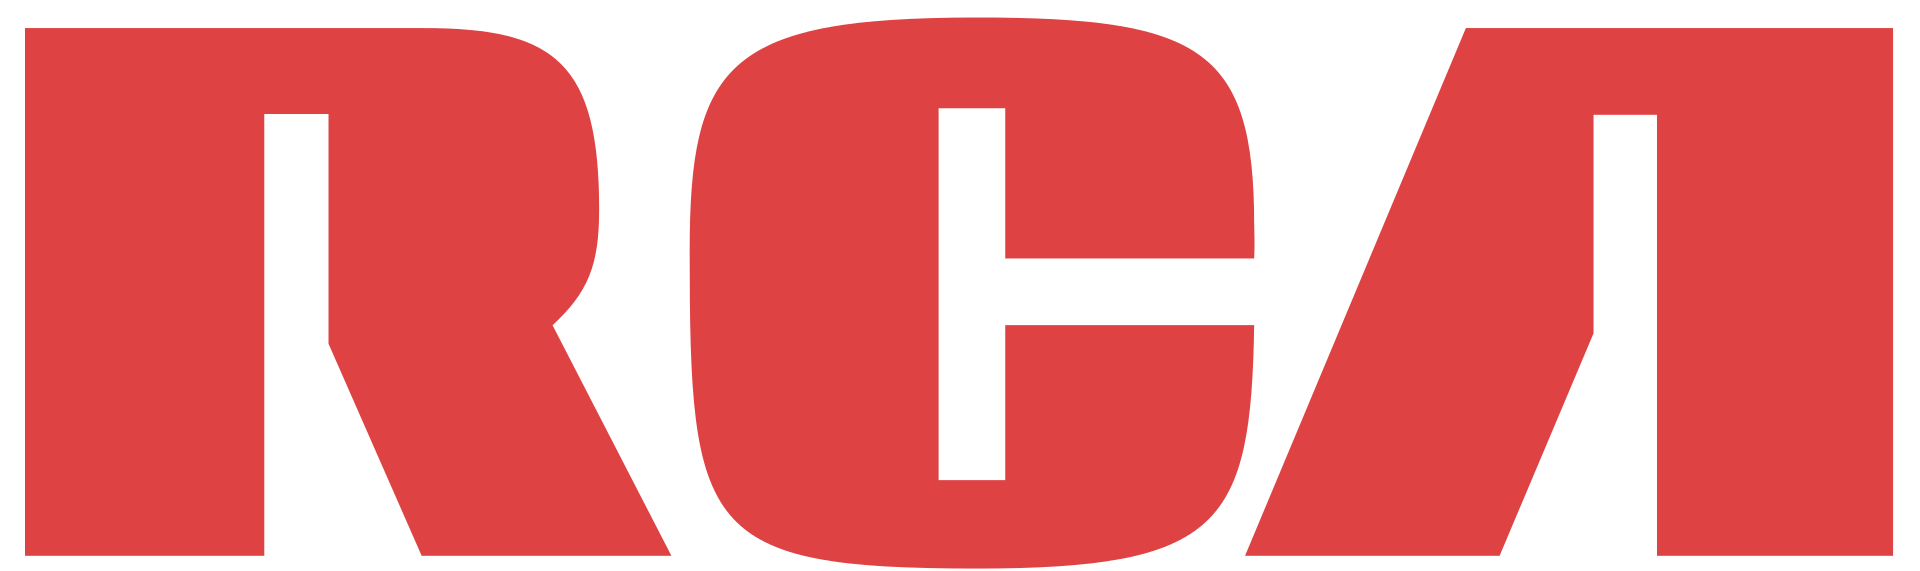 den ursprungliga RCA-logotypen. Bild från Wikipedia .